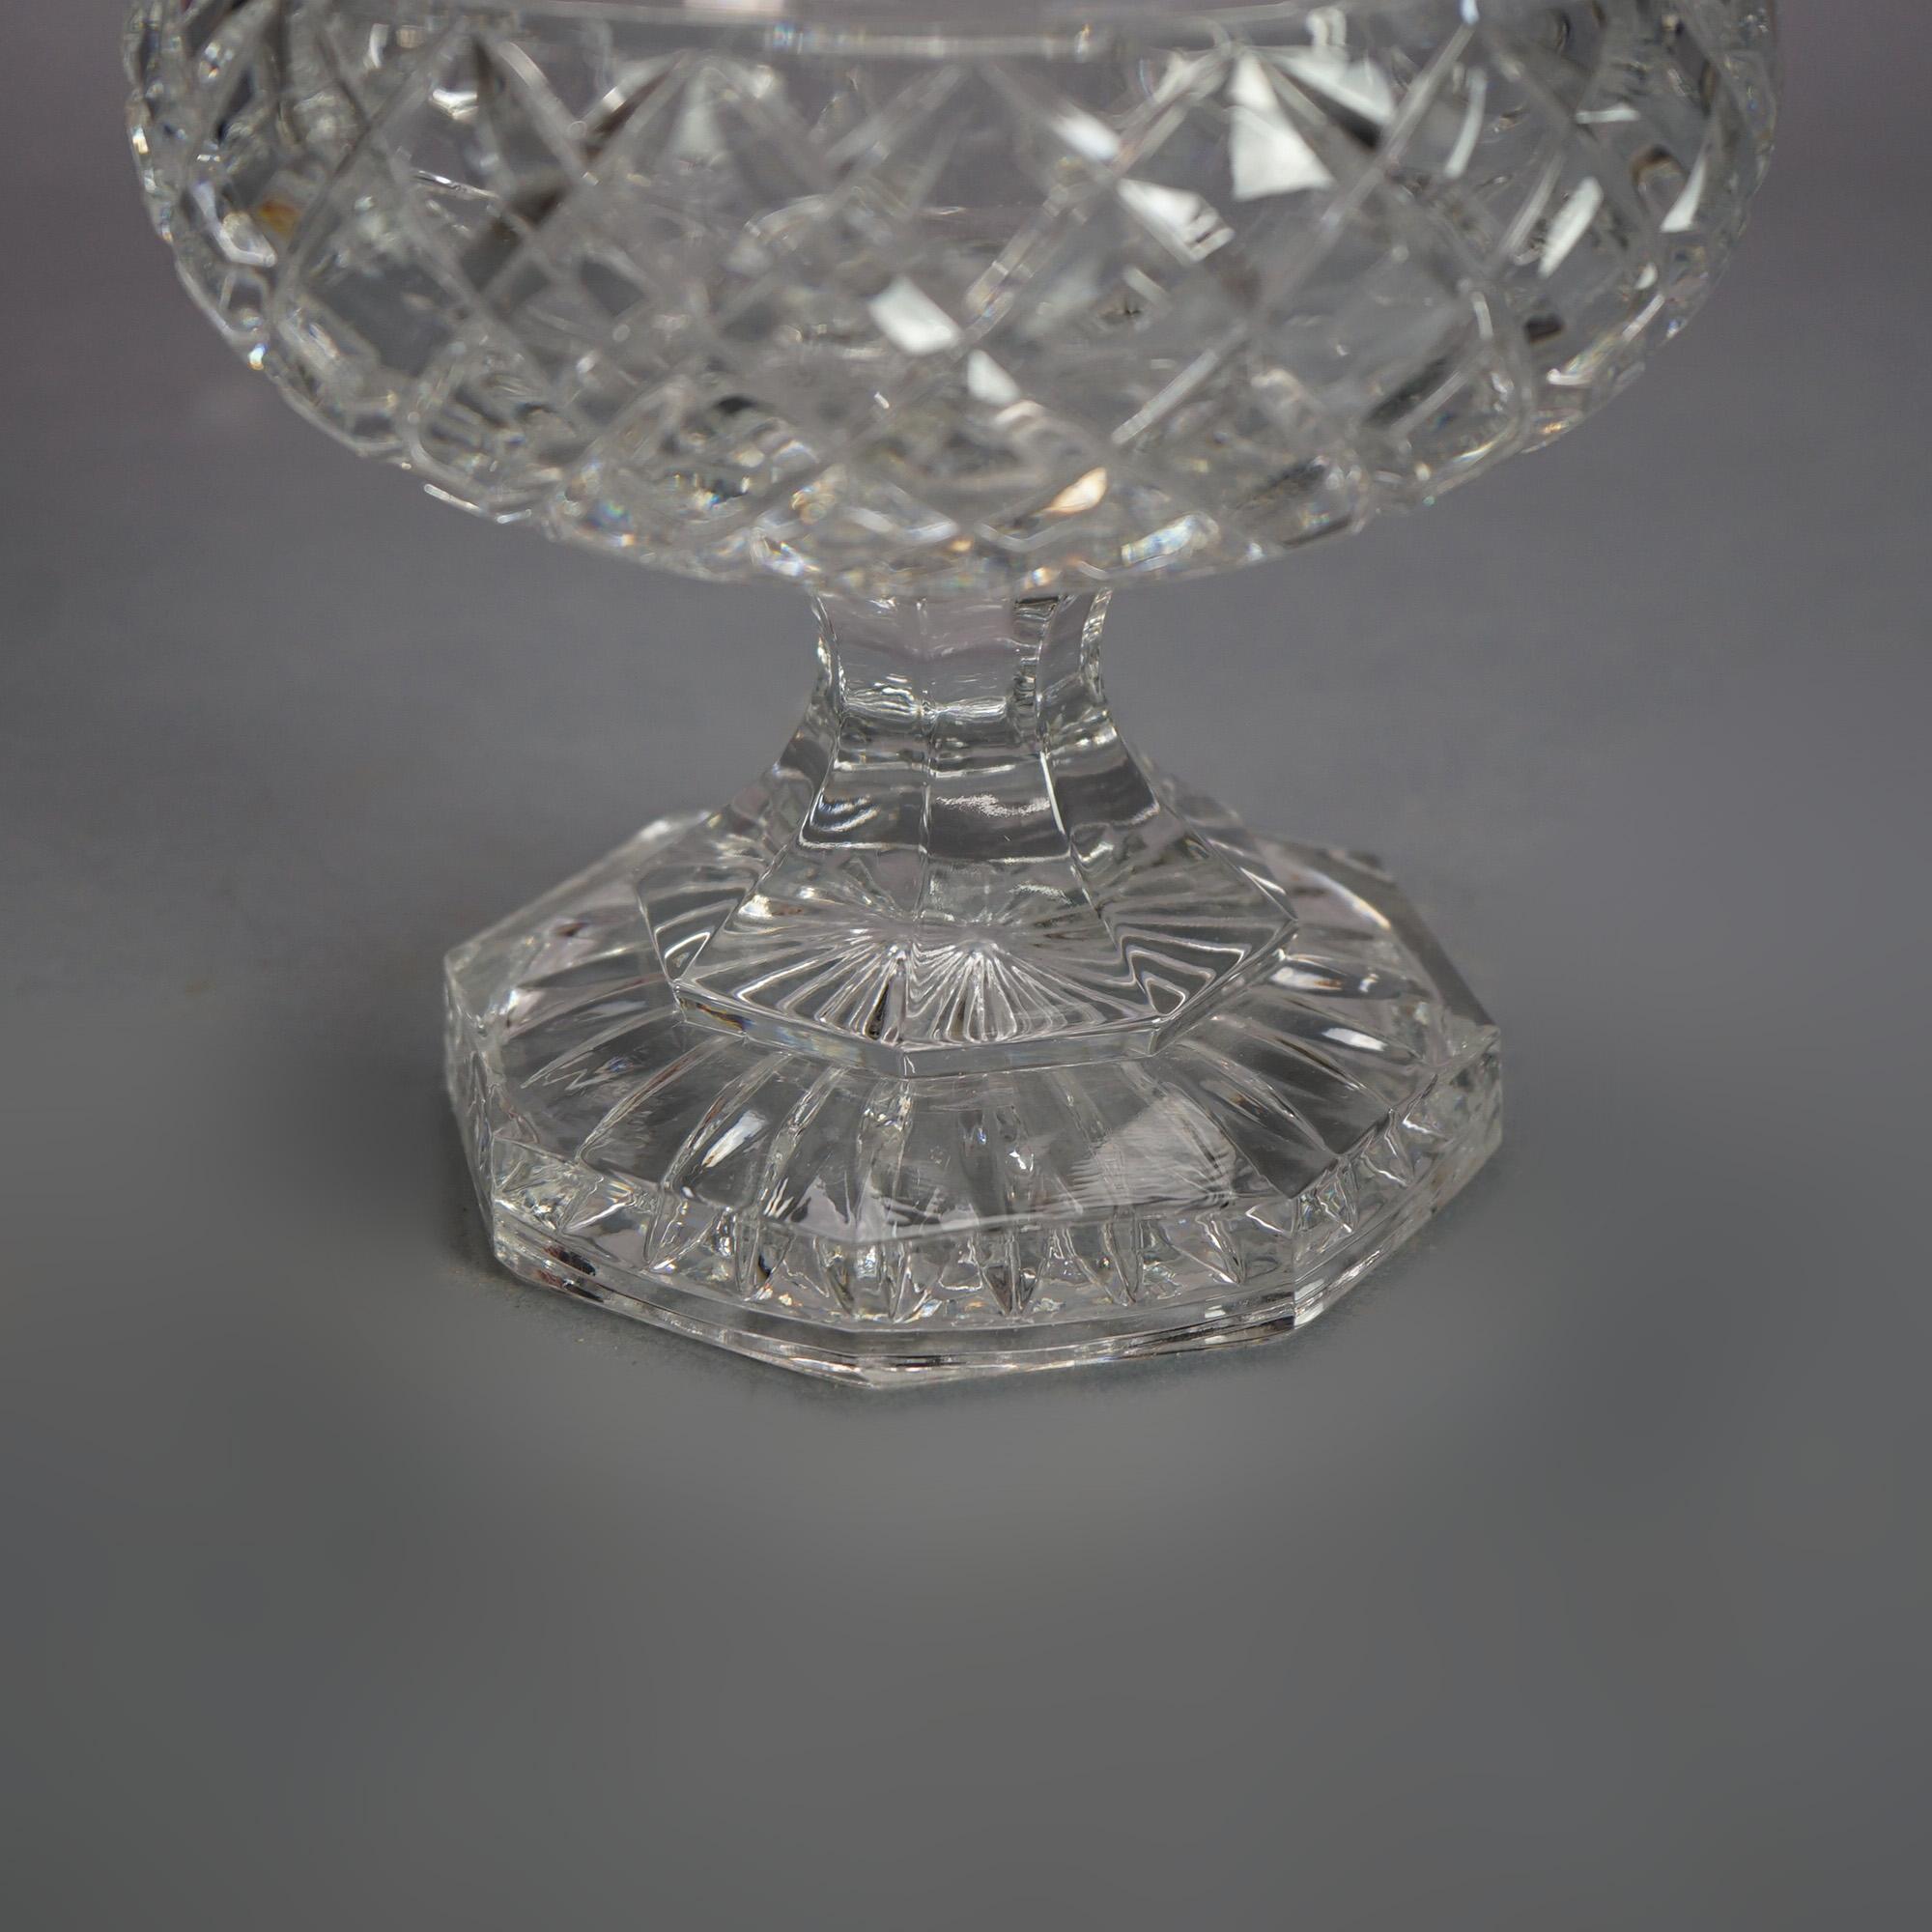 Manner of Steuben Gravierte Kristall GTE Trophäe Award Cup Vase C1950

Maße - 8 